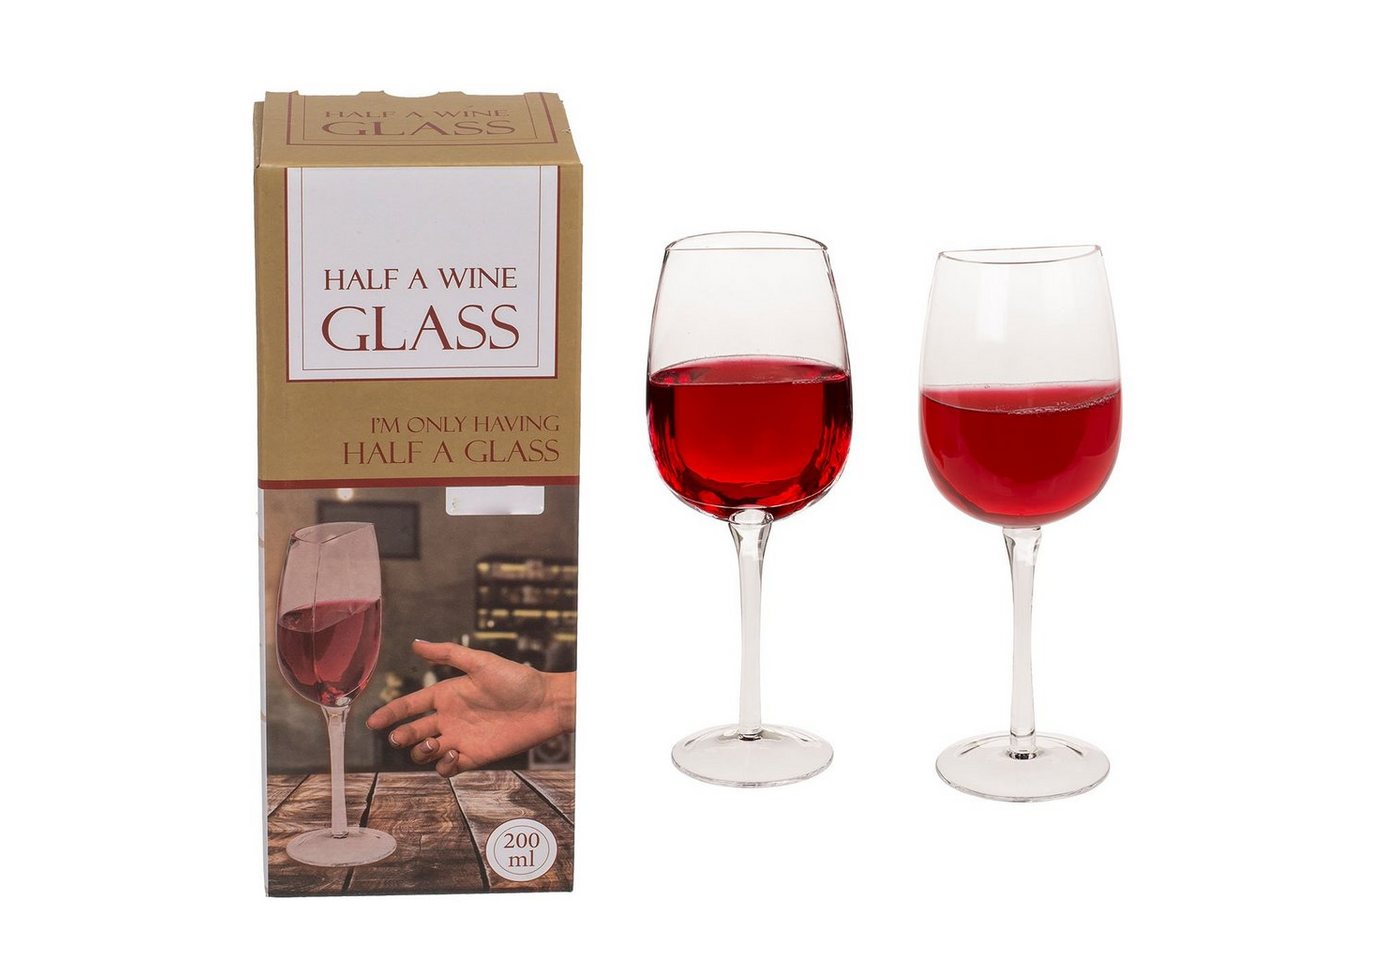 ReWu Weinglas Halbes Weinglas 200ml 21 x 8 cm, Glas von ReWu